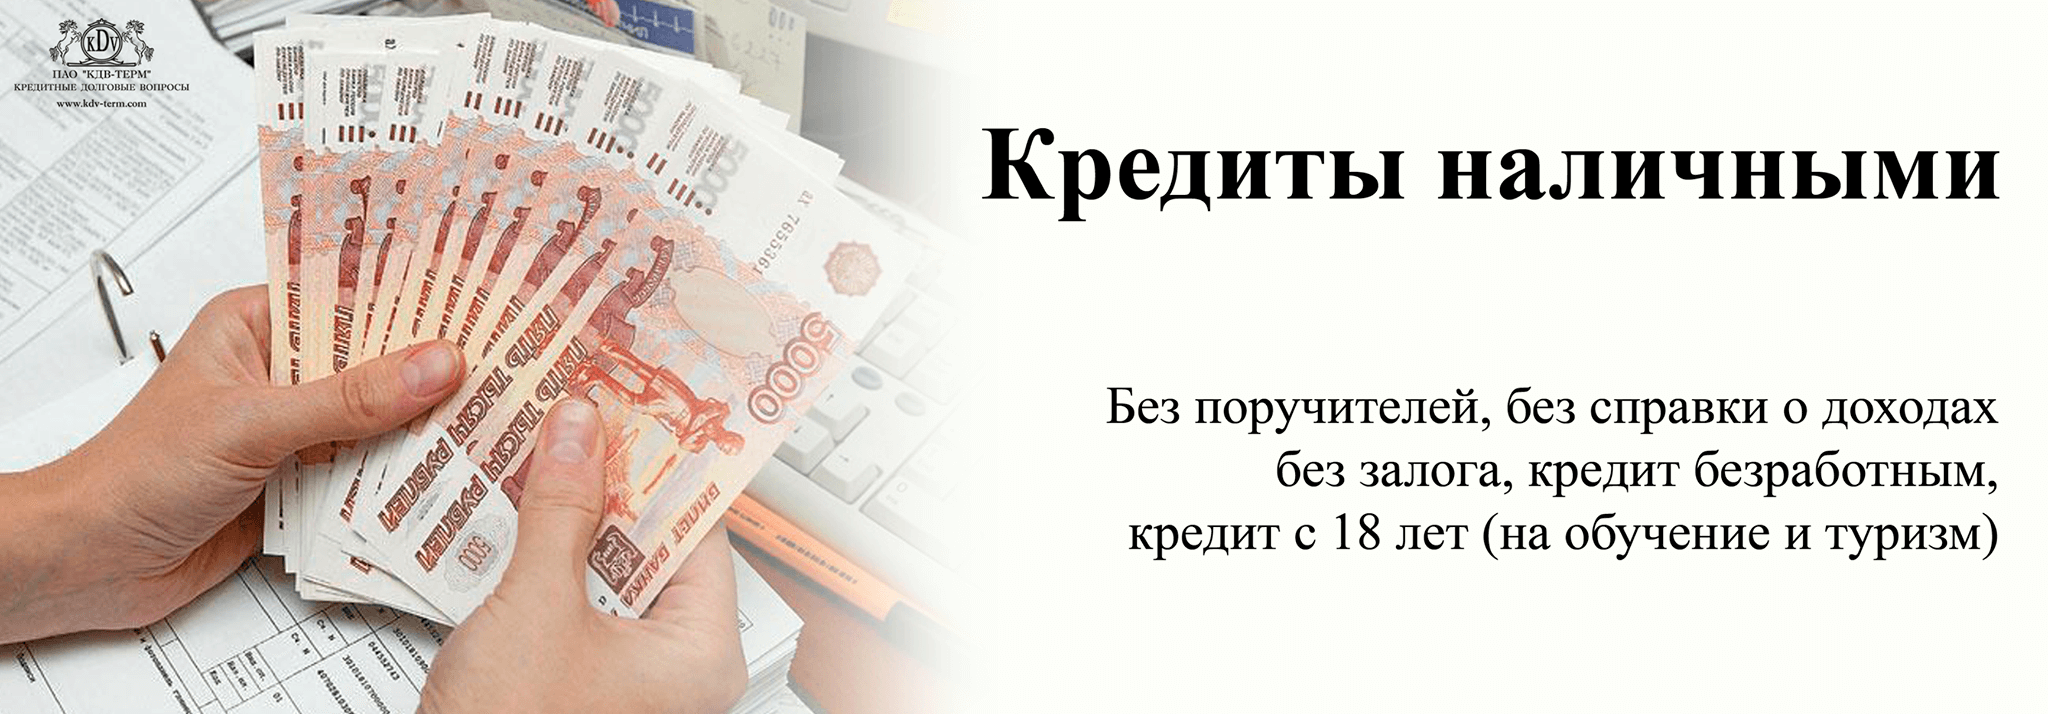 Безотказные Займы наличными в Невинномысске без проверок по паспорту